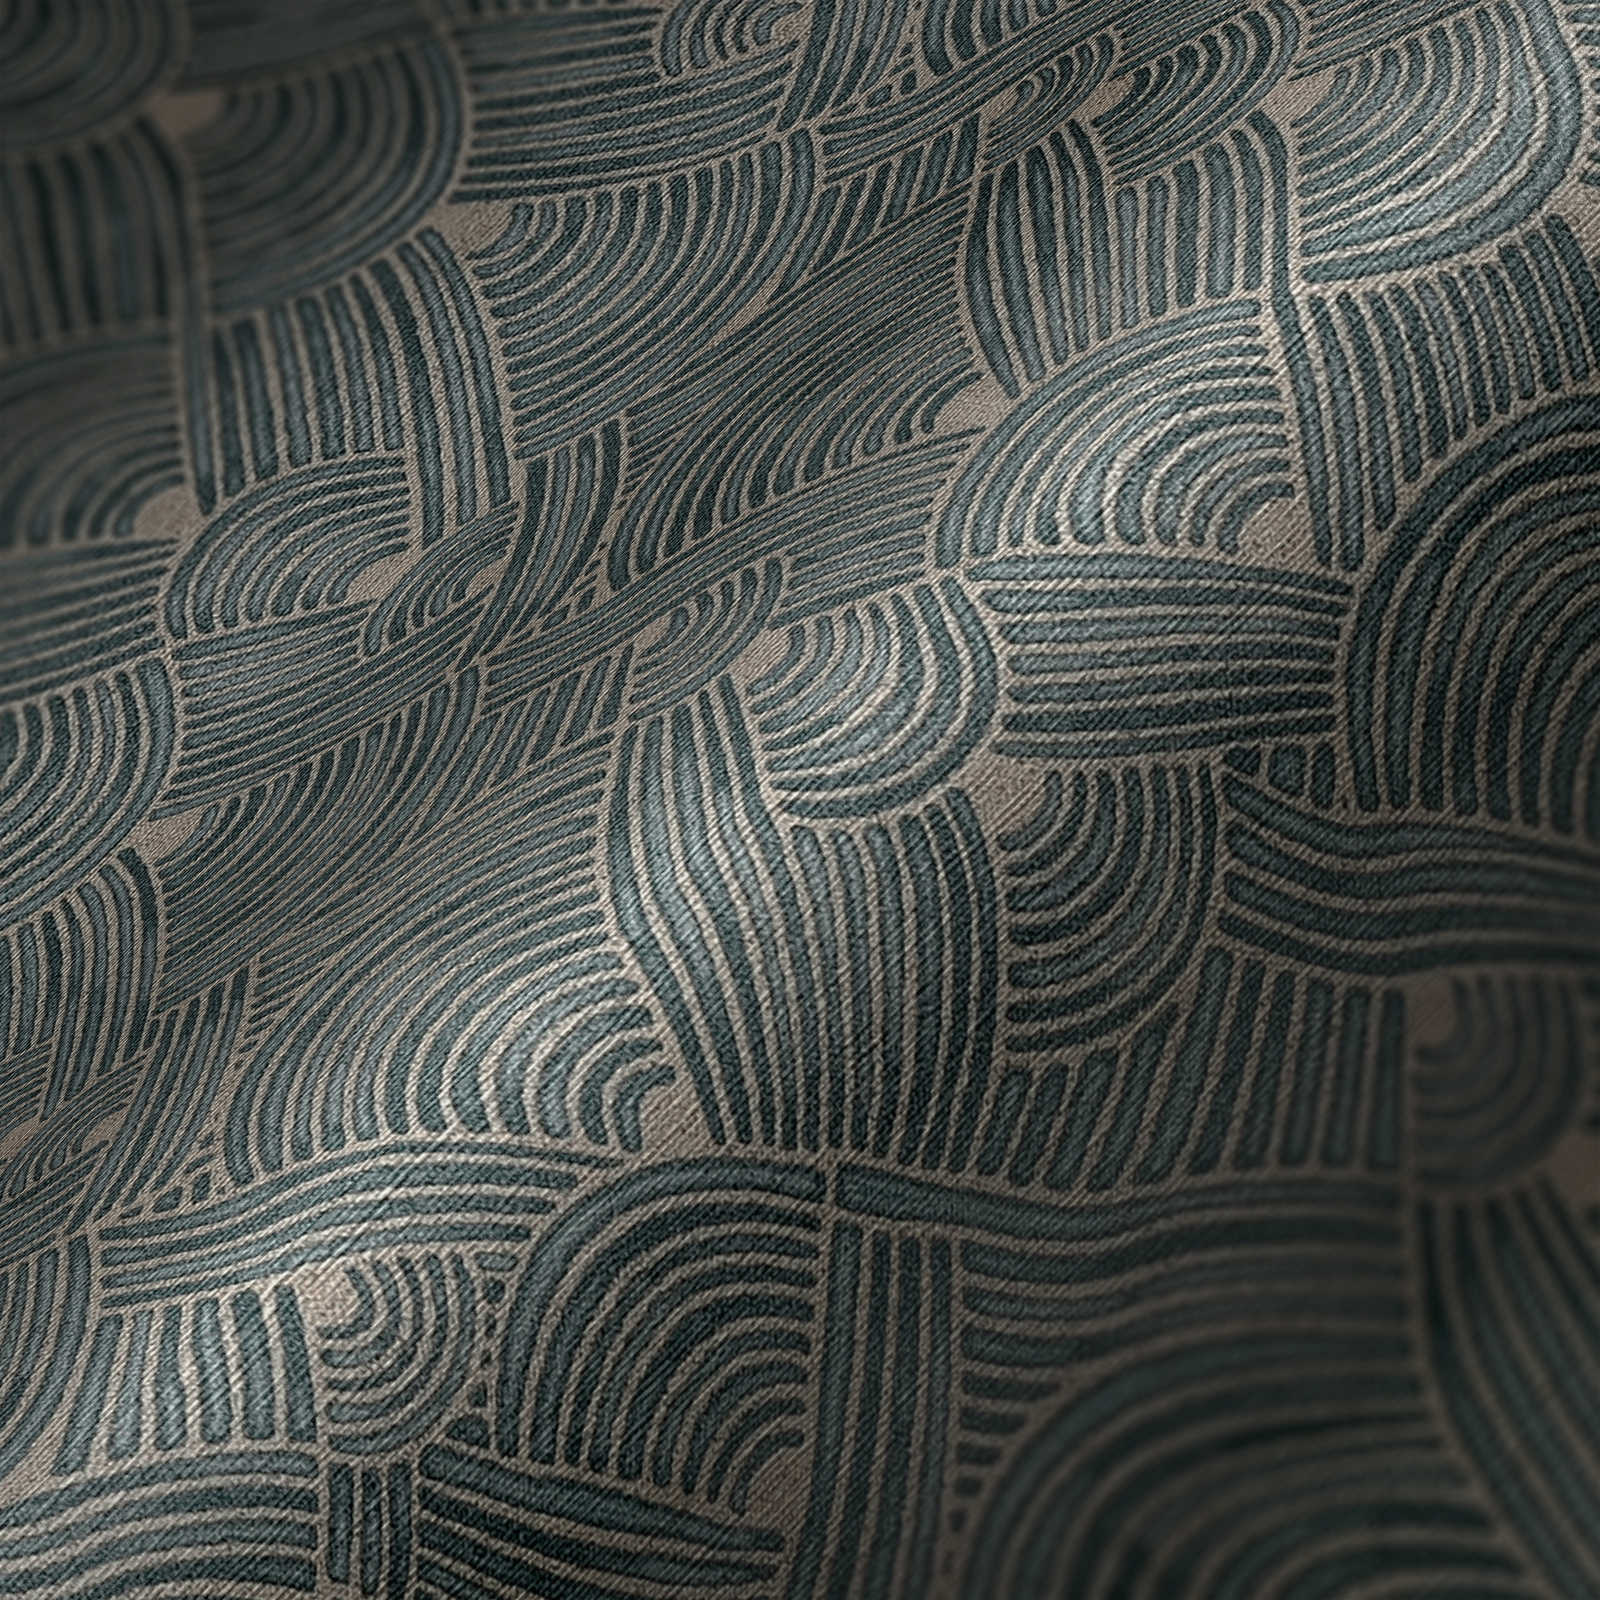             Papel pintado no tejido de diseño étnico con aspecto de cesta - azul, gris, beige
        